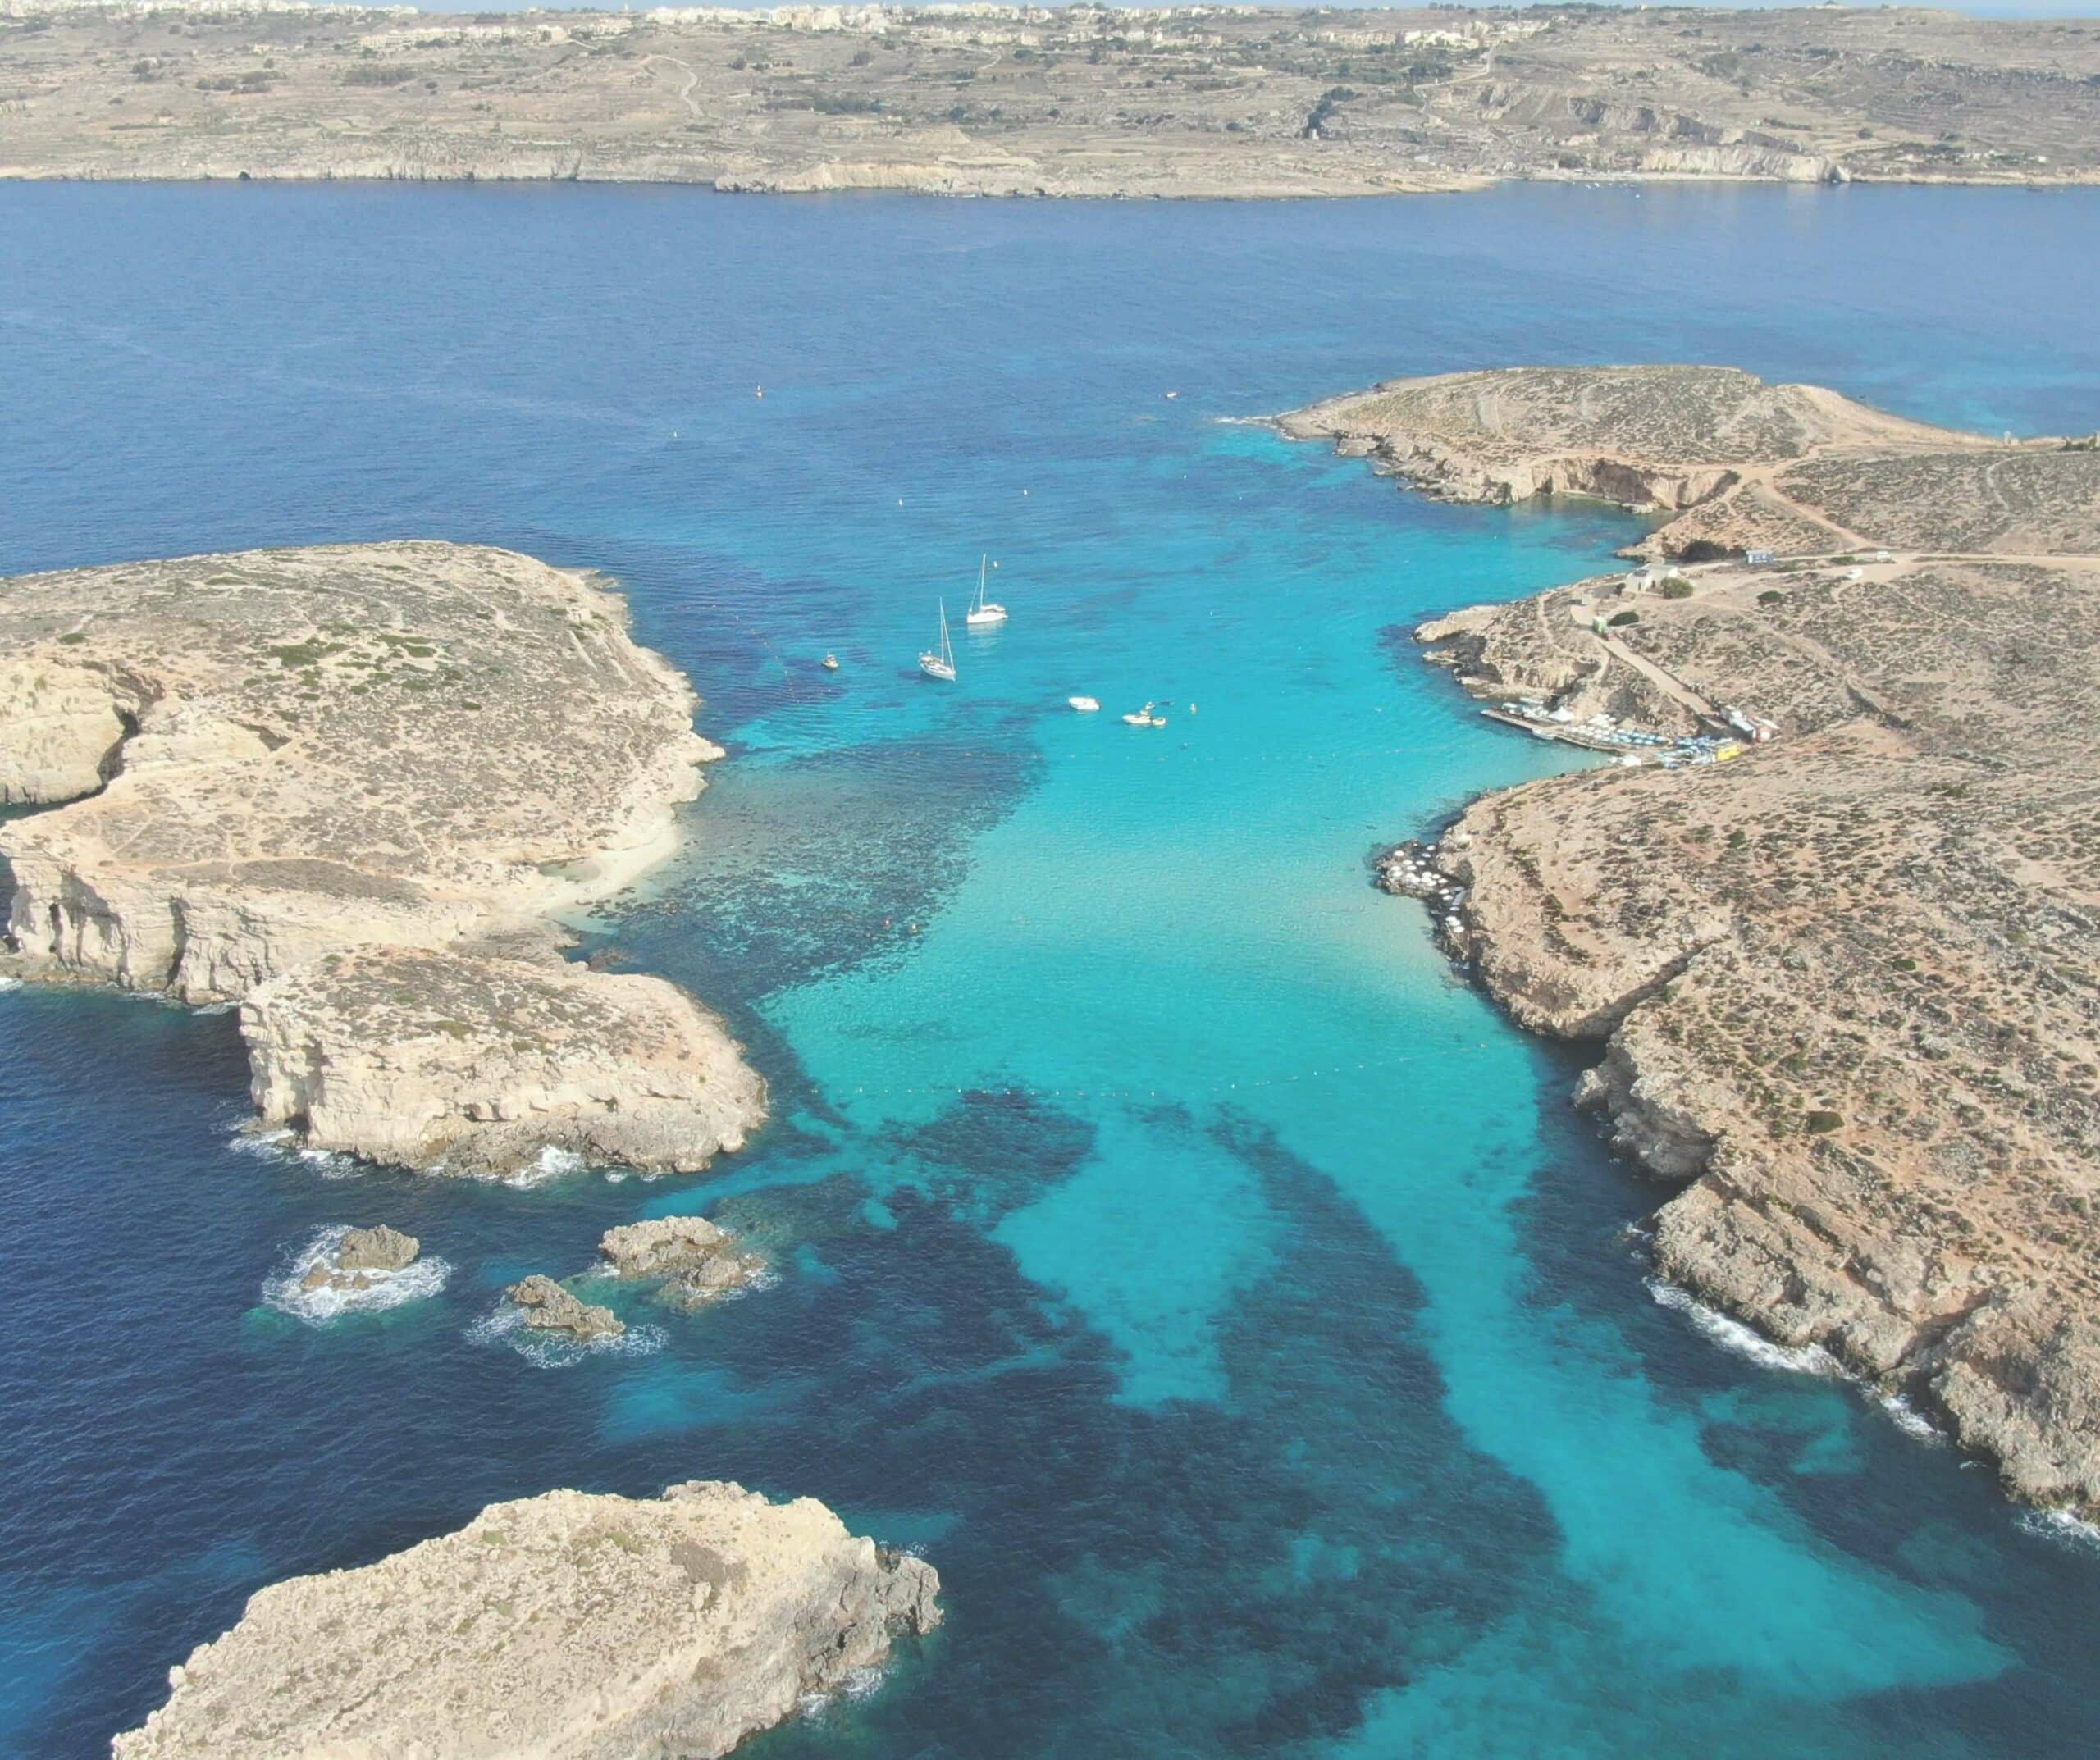 blu lagoon malta boat trip